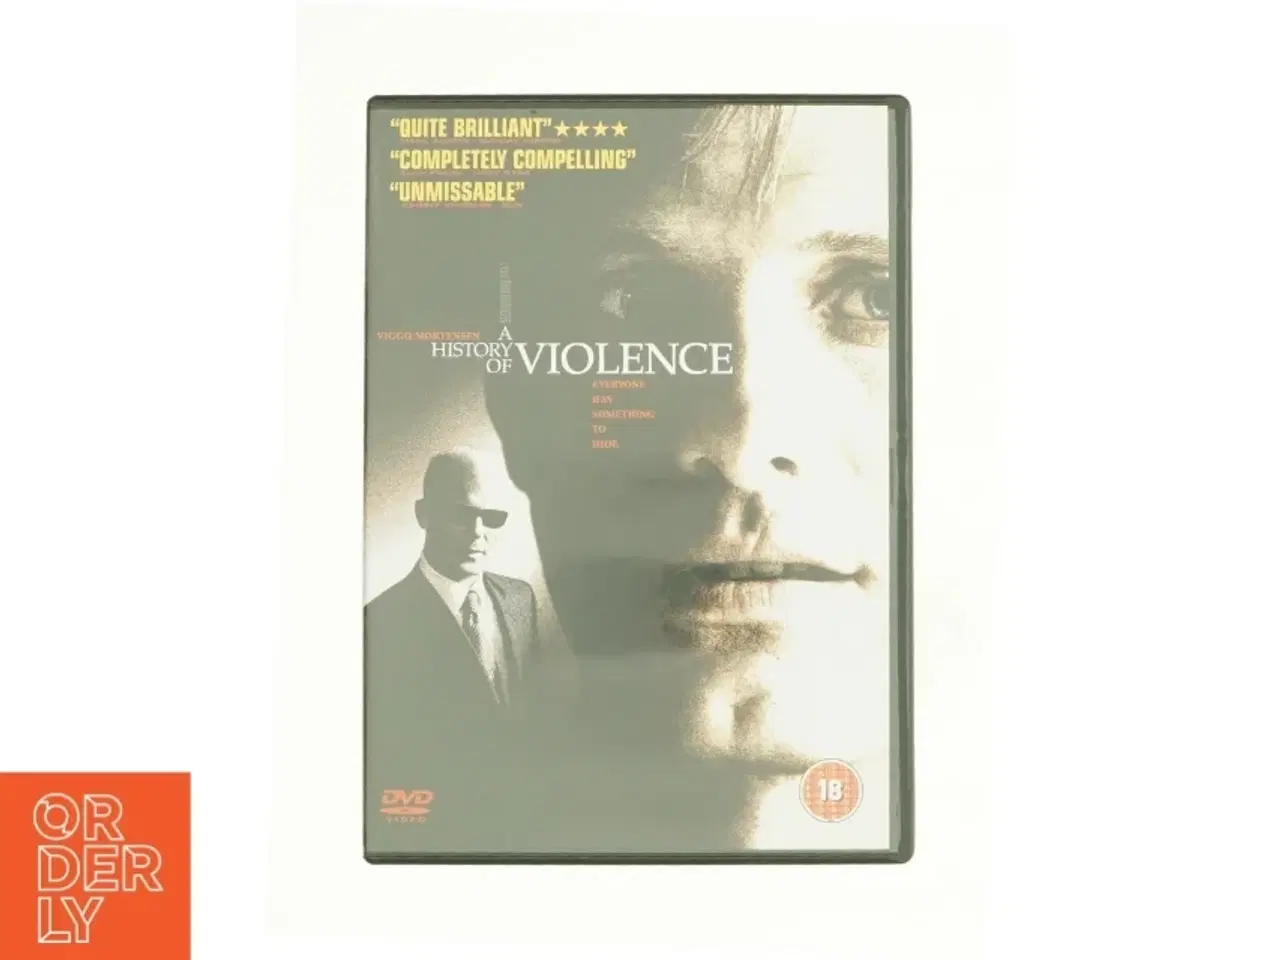 Billede 1 - A History of Violence fra DVD